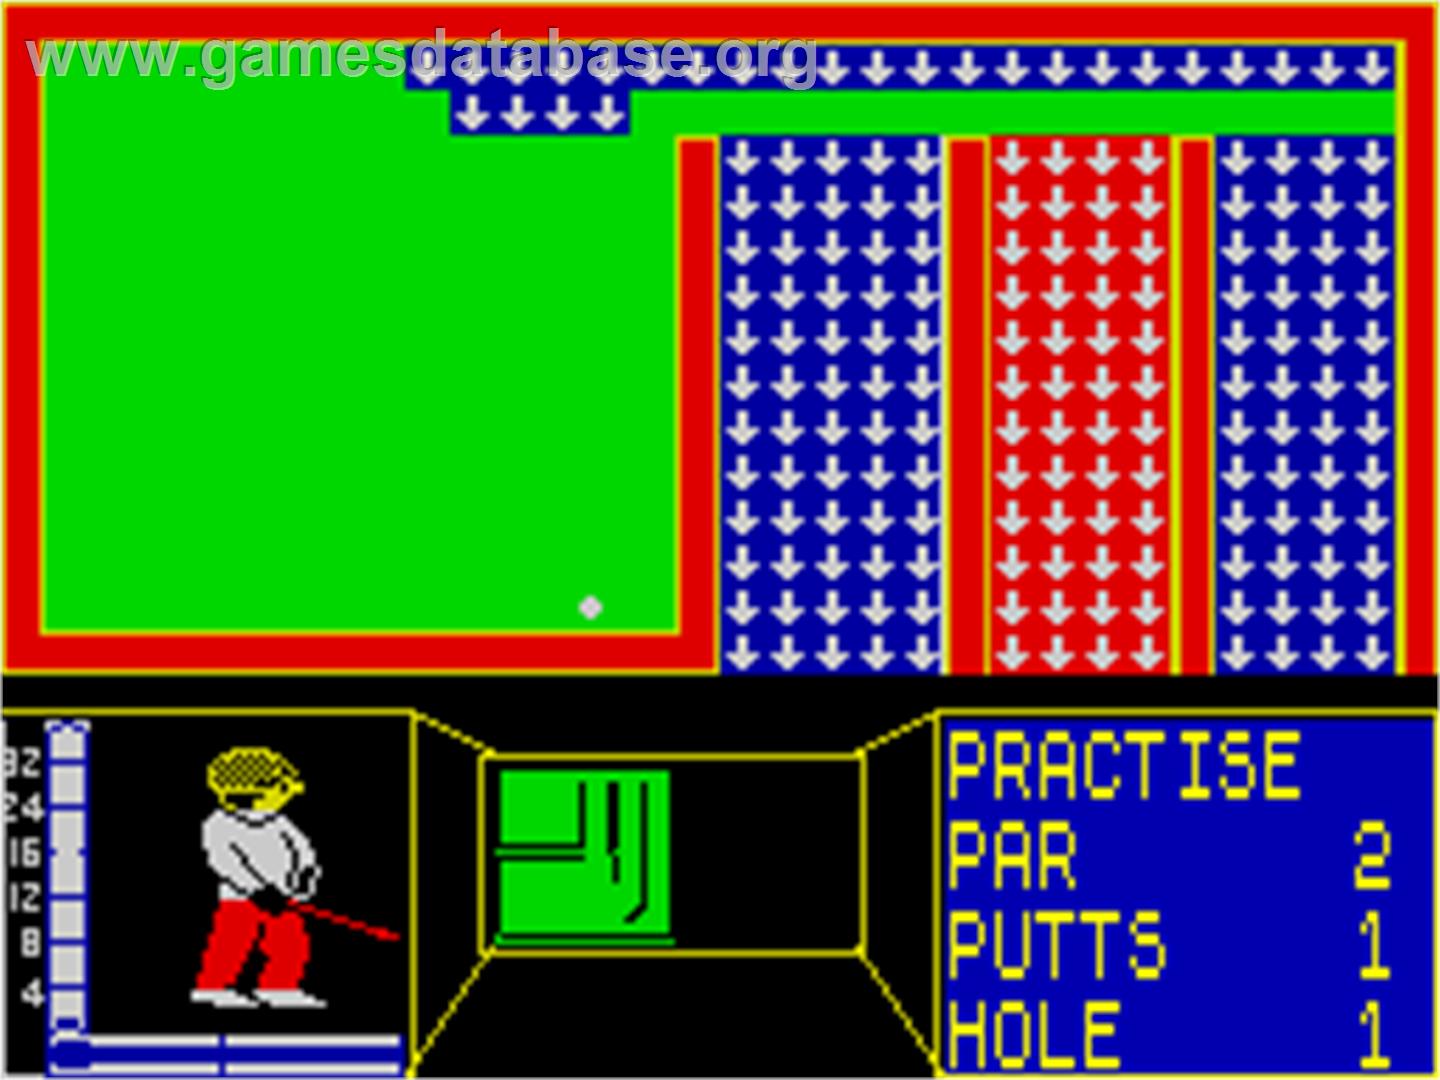 Mini-Putt - Sinclair ZX Spectrum - Artwork - In Game